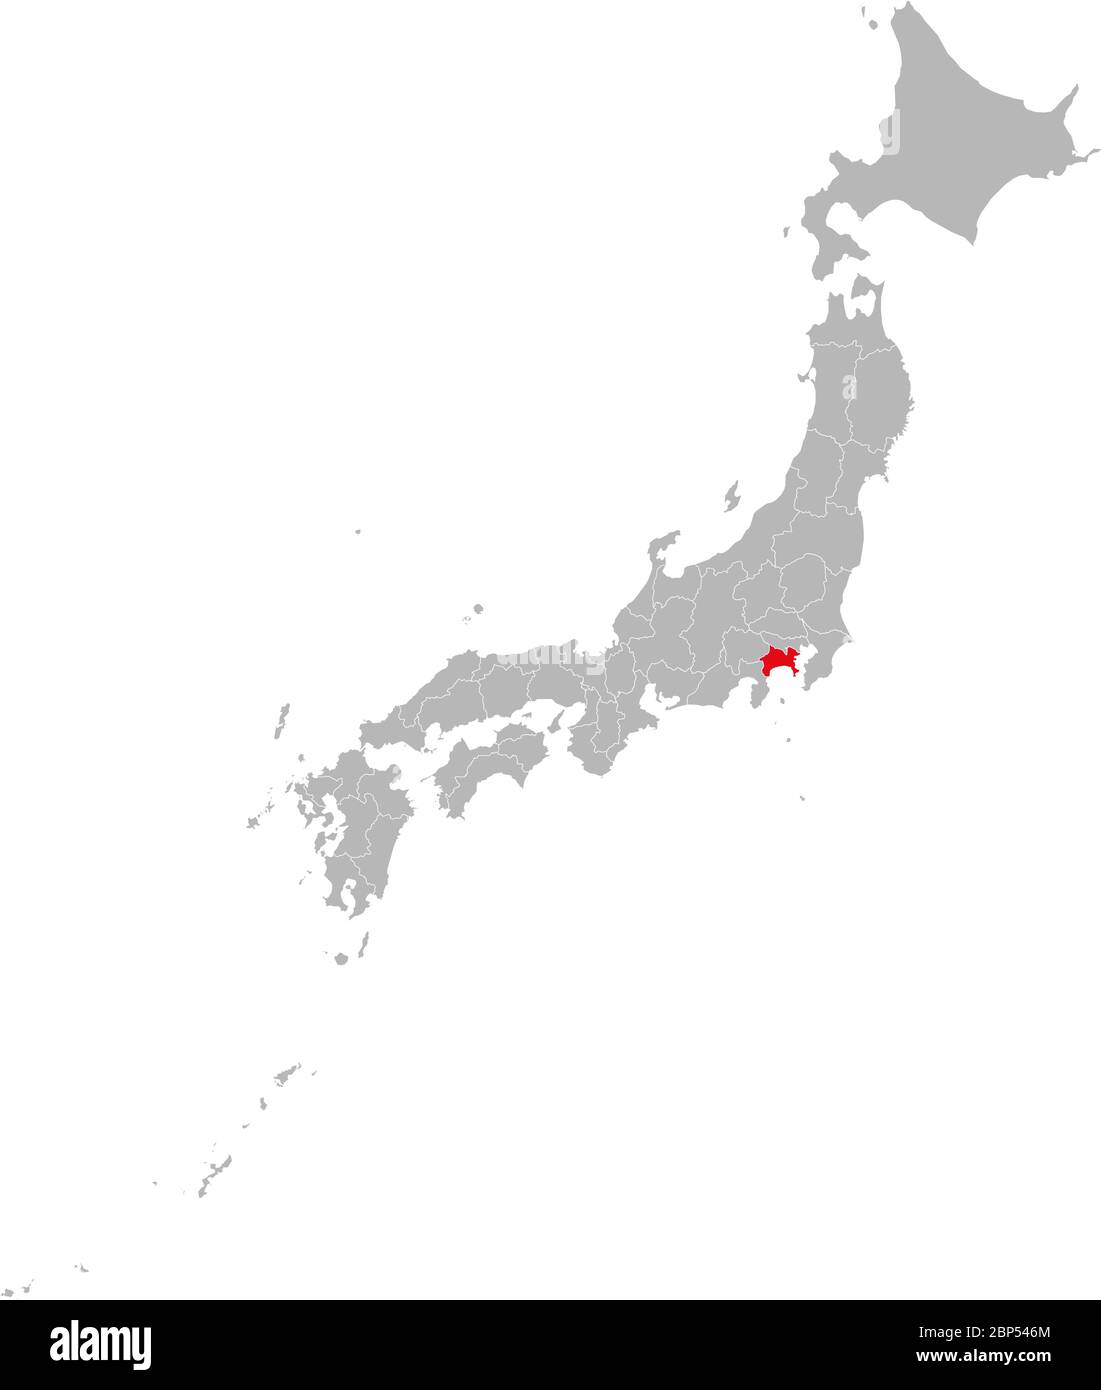 Provincia di Kanagawa evidenziata in rosso sulla mappa del Giappone. Sfondo grigio. Concetti e background aziendali. Illustrazione Vettoriale